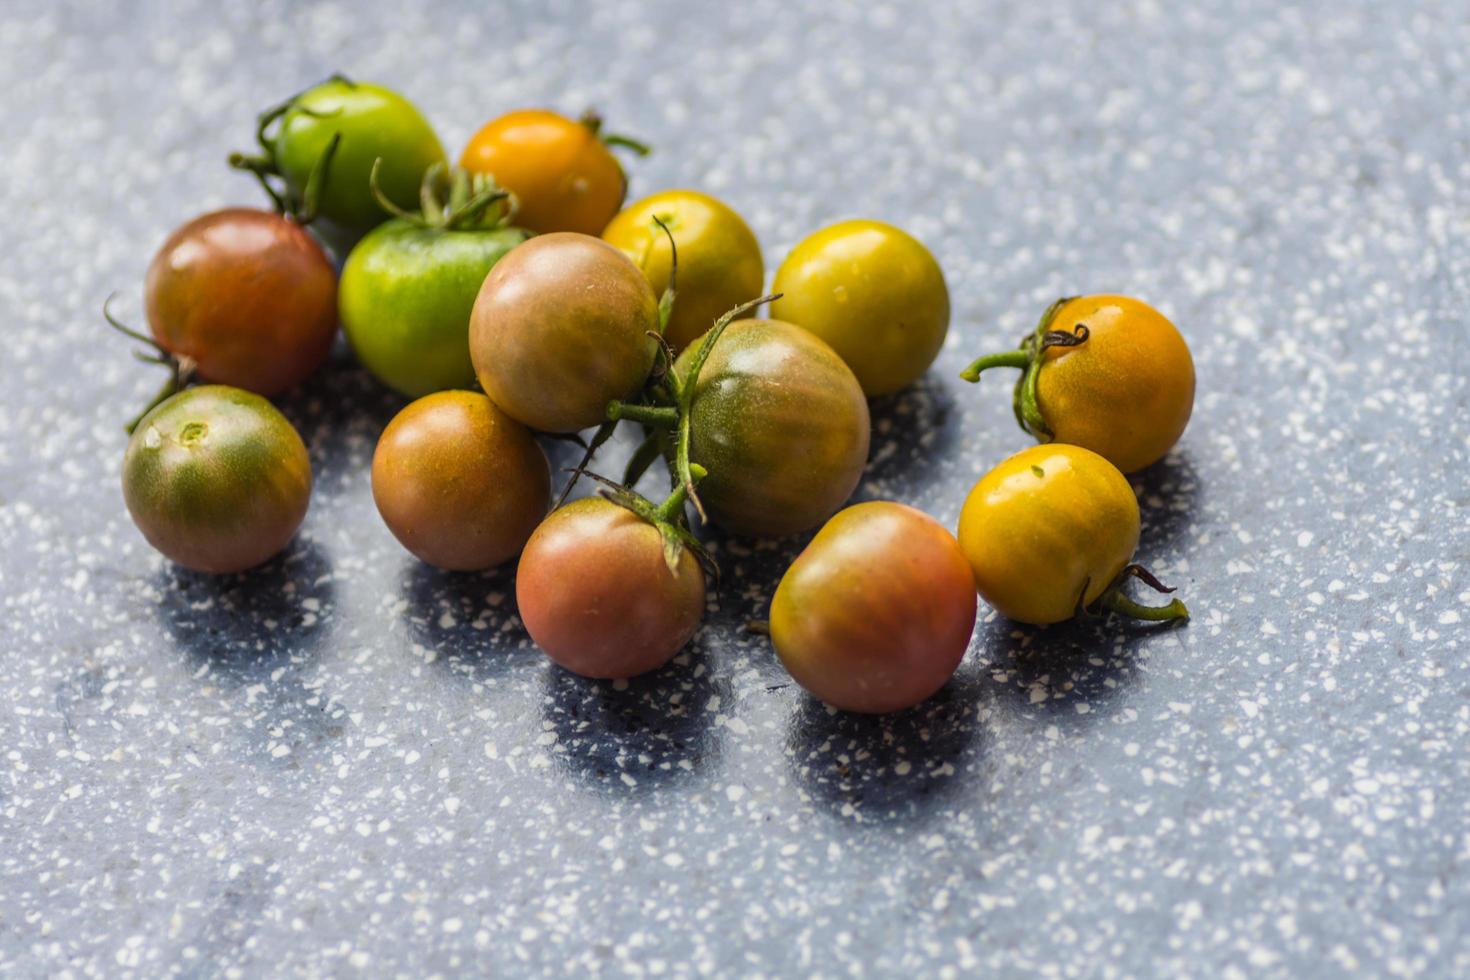 beaucoup de petites tomates non mûres de différentes couleurs photo